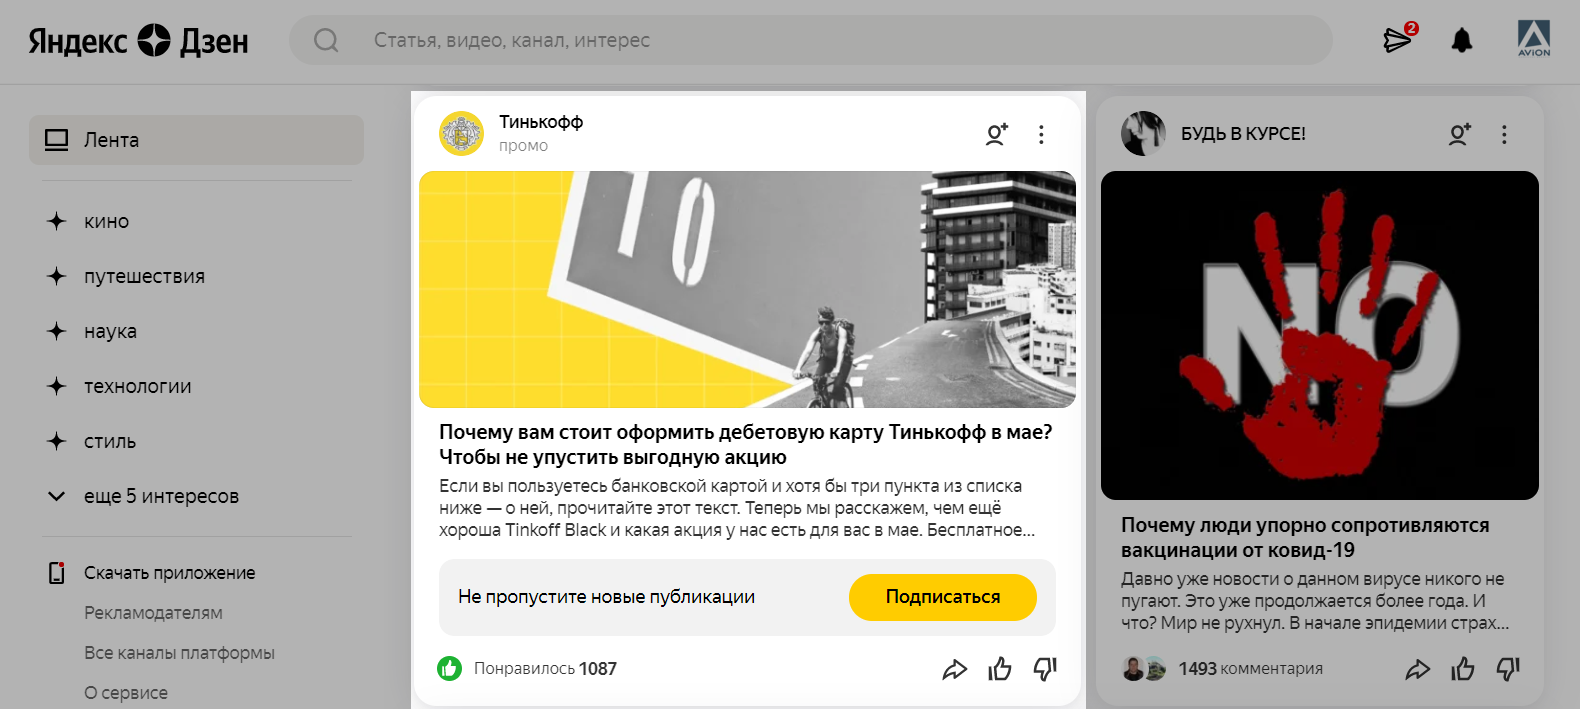 Пример промо-статьи в ленте «Яндекс.Дзен»